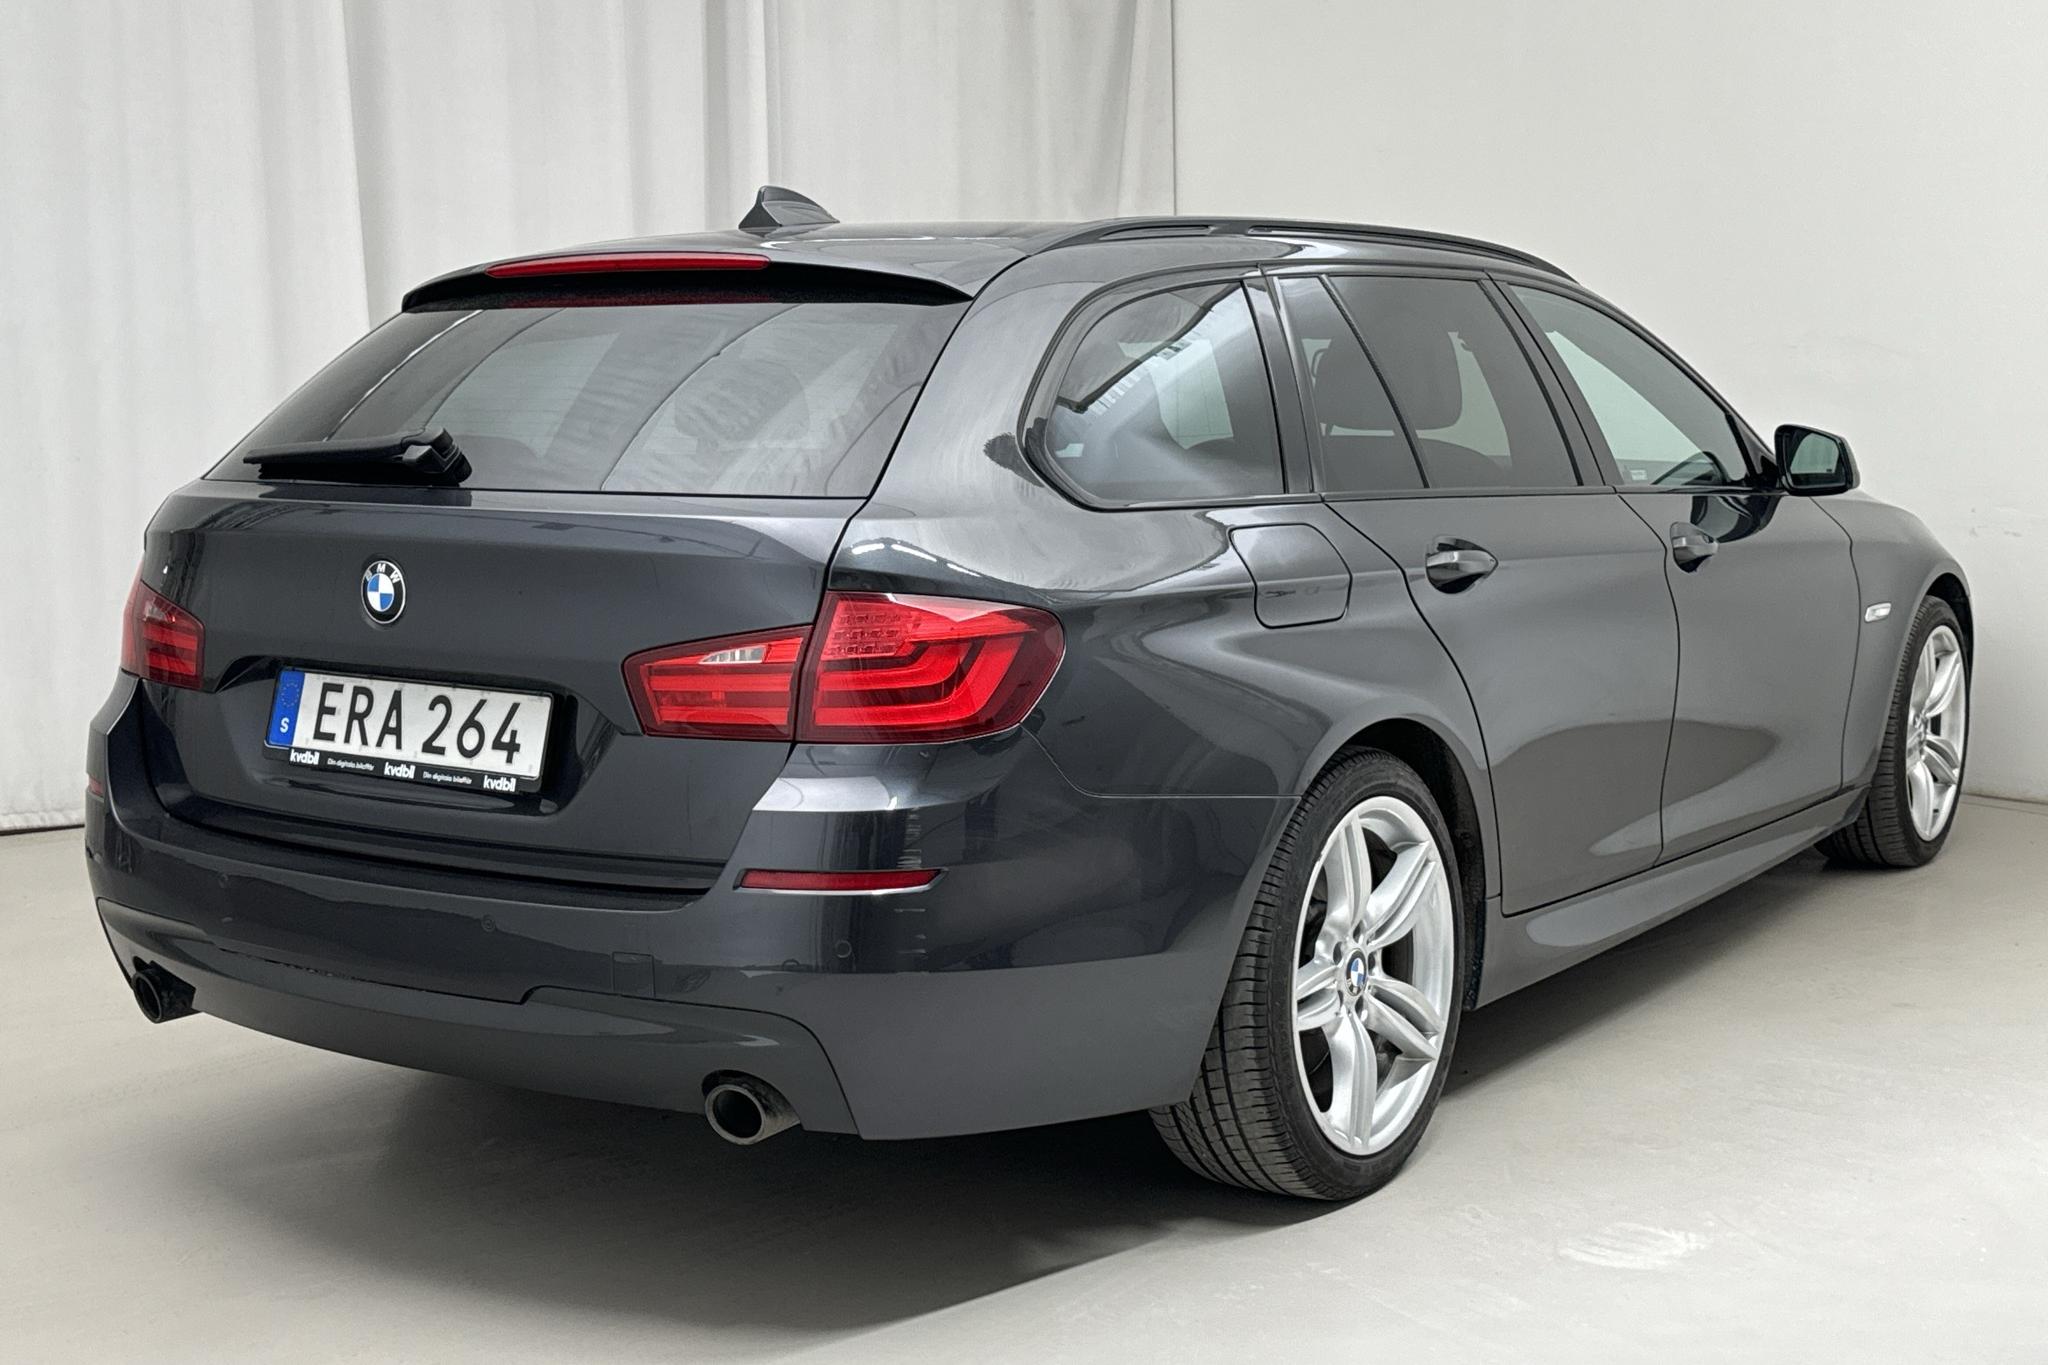 BMW 535d xDrive Touring, F11 (313hk) - 190 790 km - Automatic - black - 2012